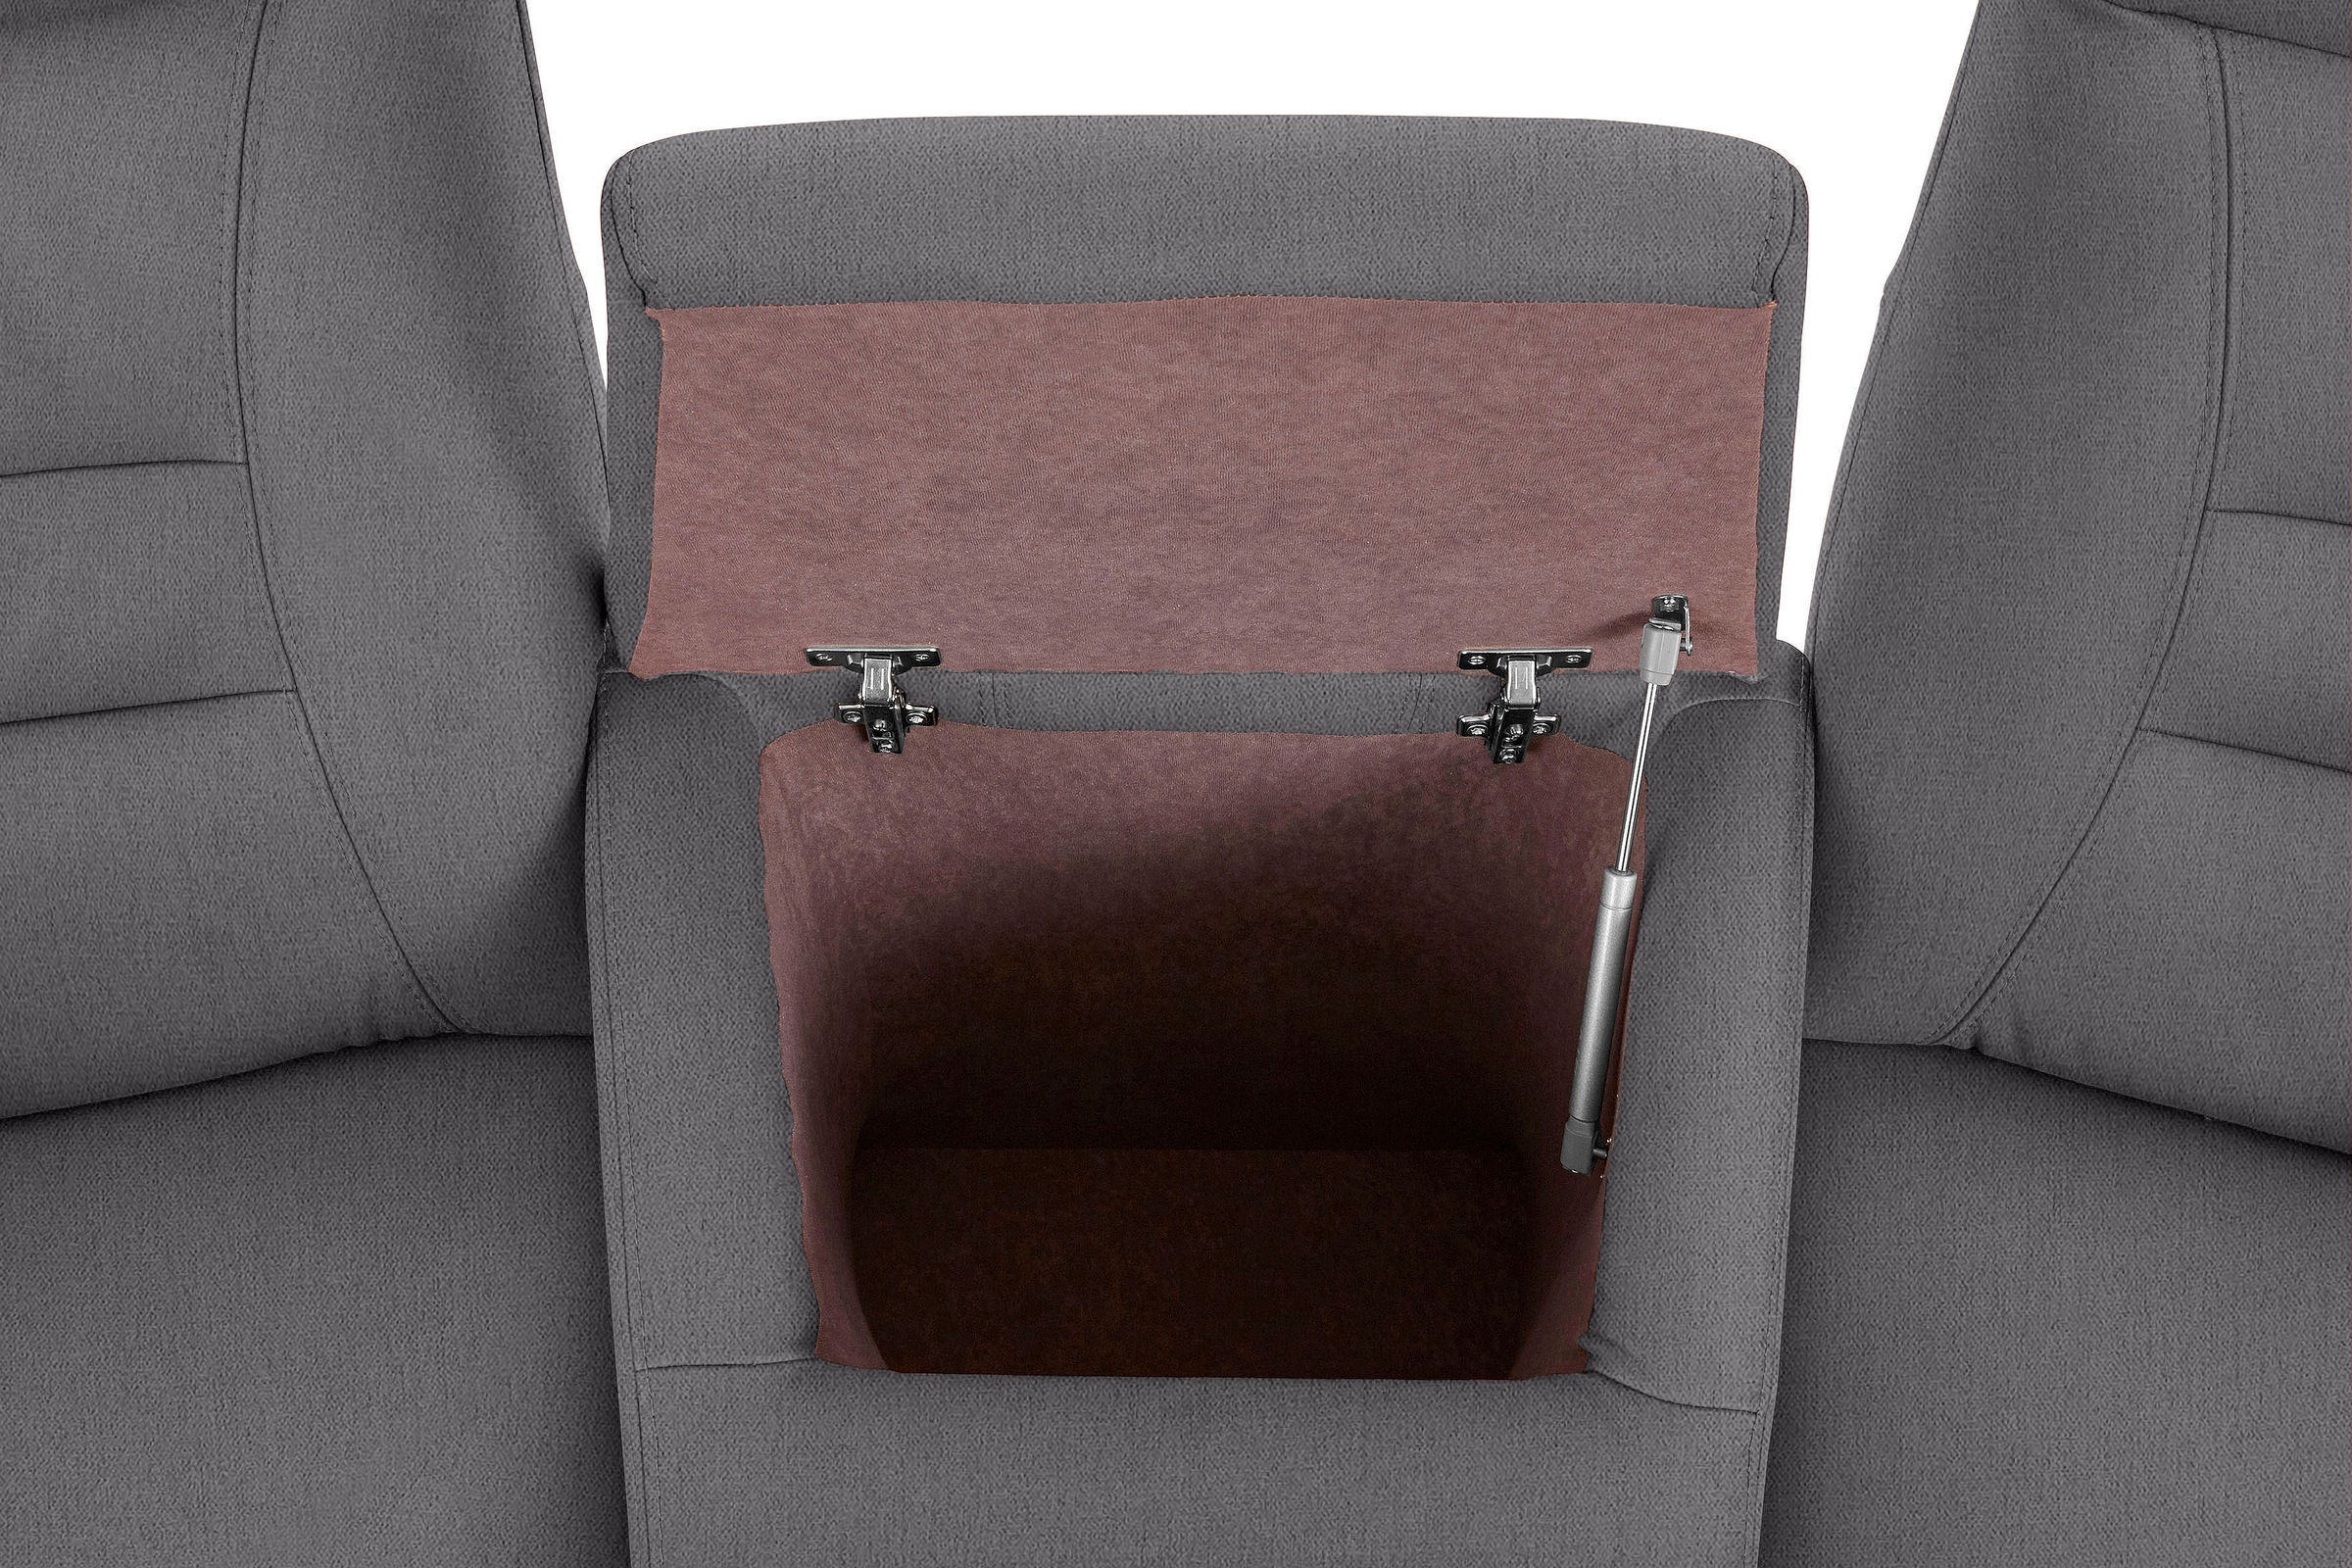 exxpo - sofa fashion 2,5-Sitzer